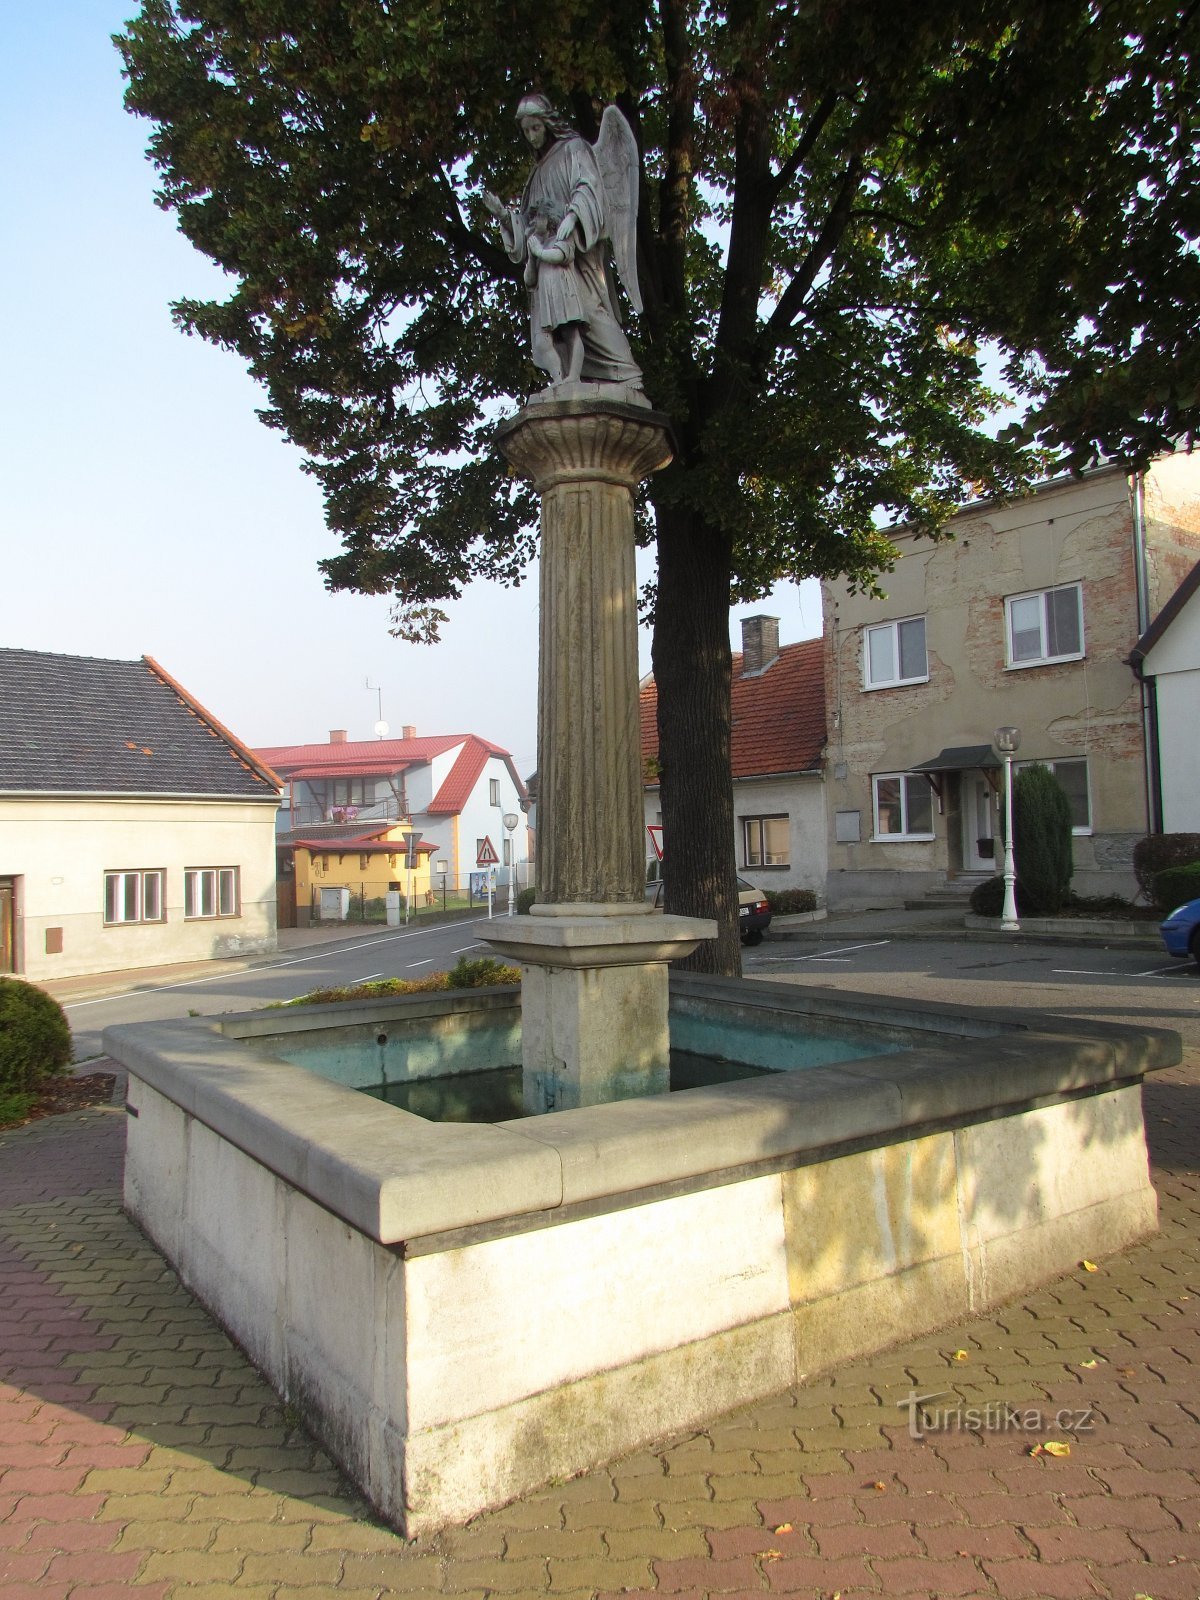 Starý Jičín - place avec fontaine et sculpture